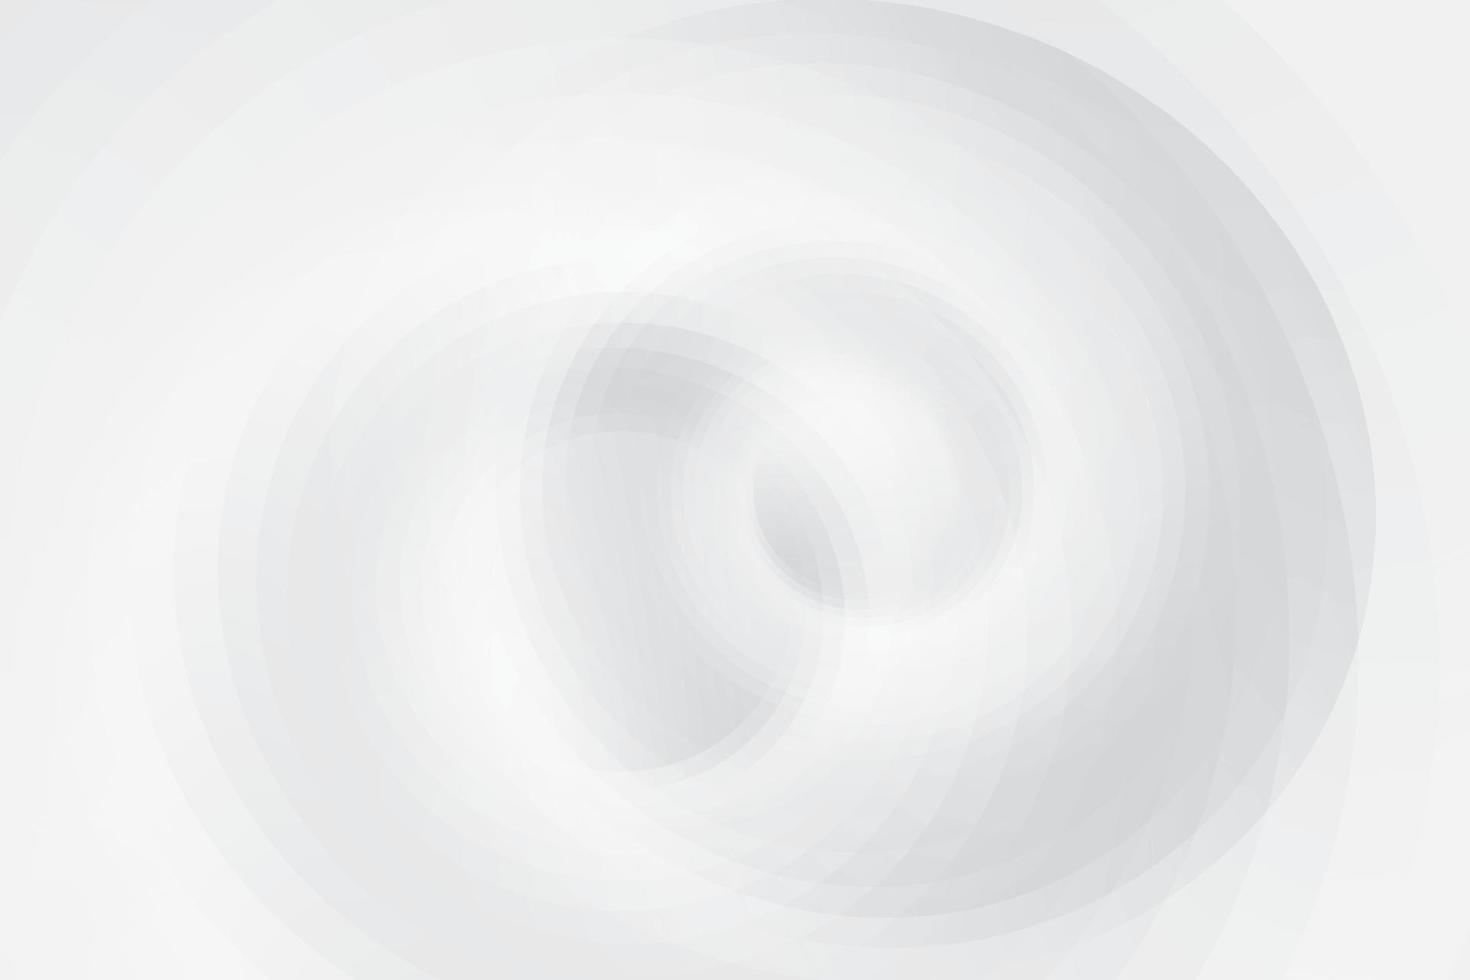 abstract wit en grijs kleur, modern ontwerp achtergrond met meetkundig ronde vorm geven aan. vector illustratie.